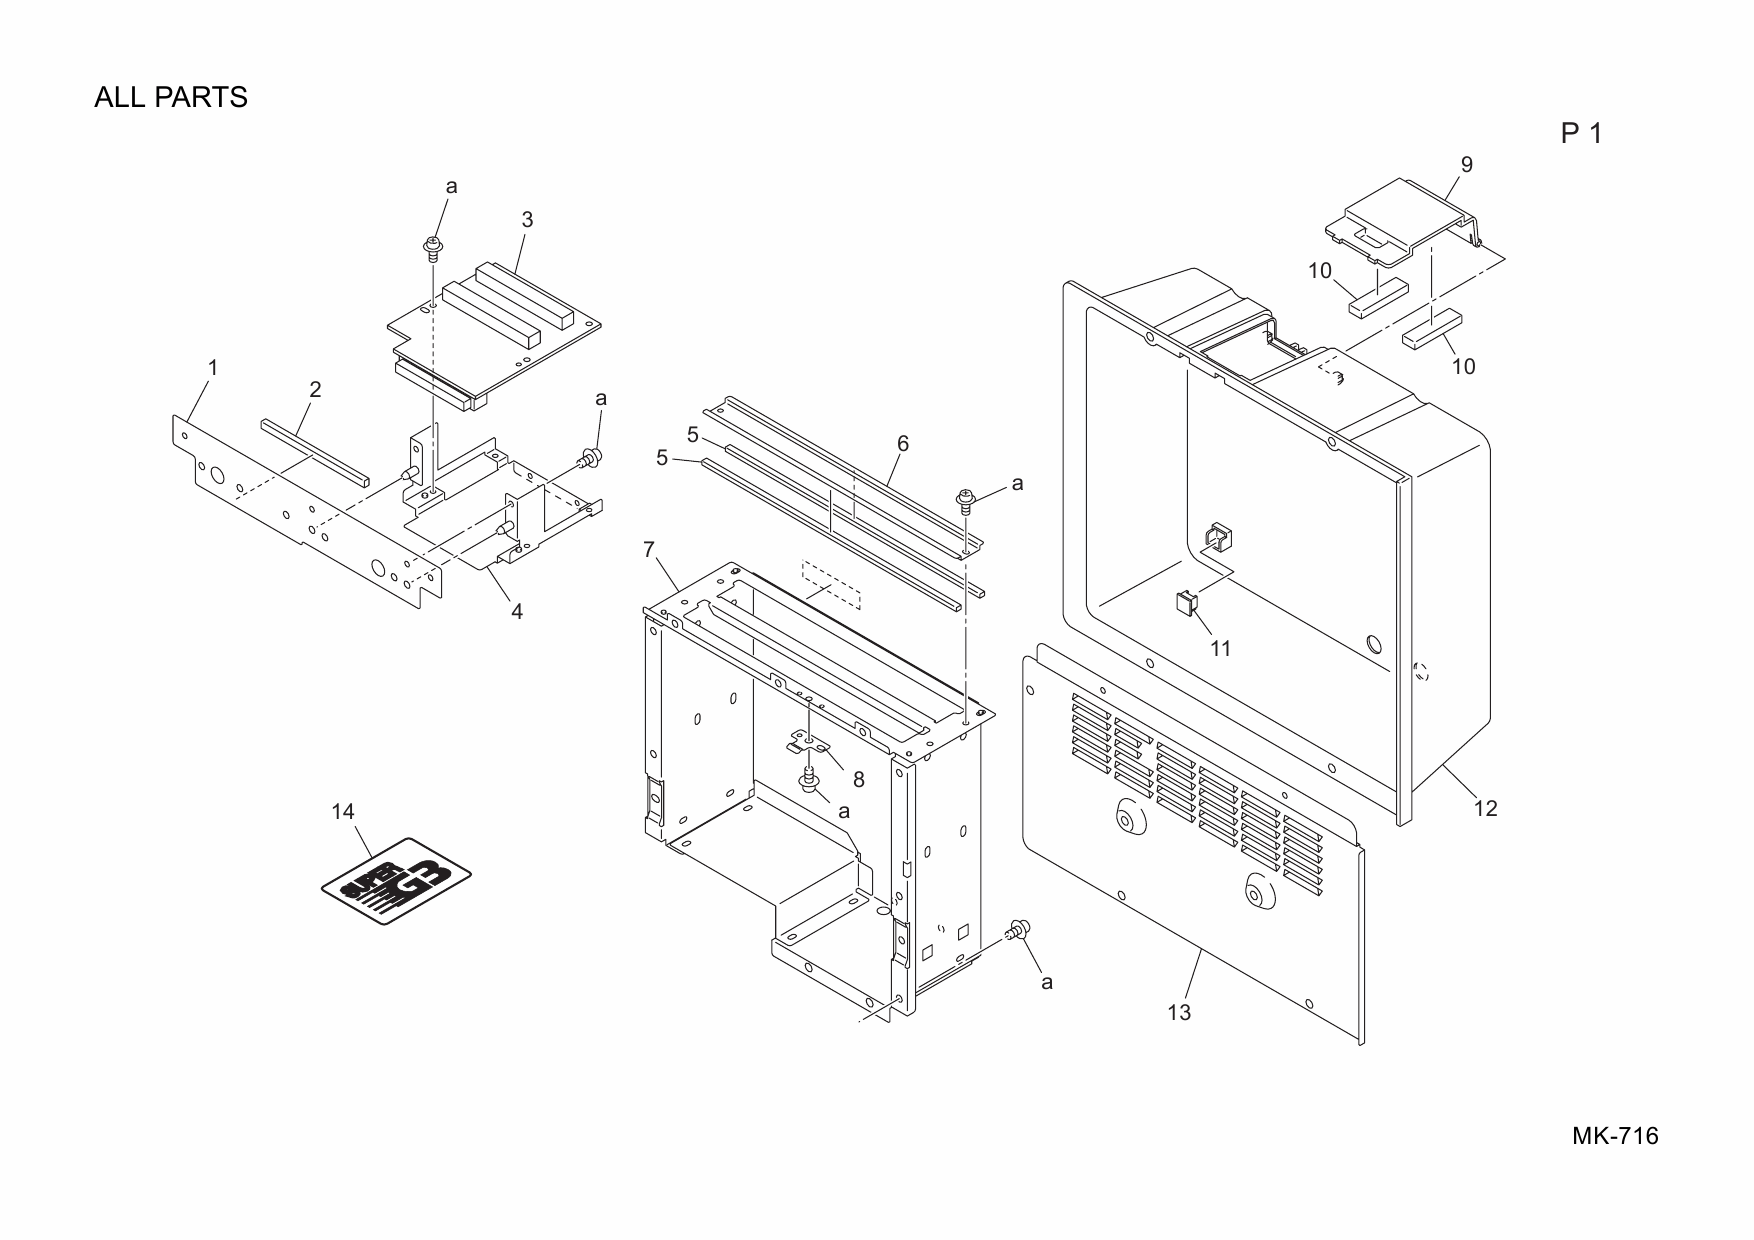 Konica-Minolta Options MK-716 A0P5 Parts Manual-5